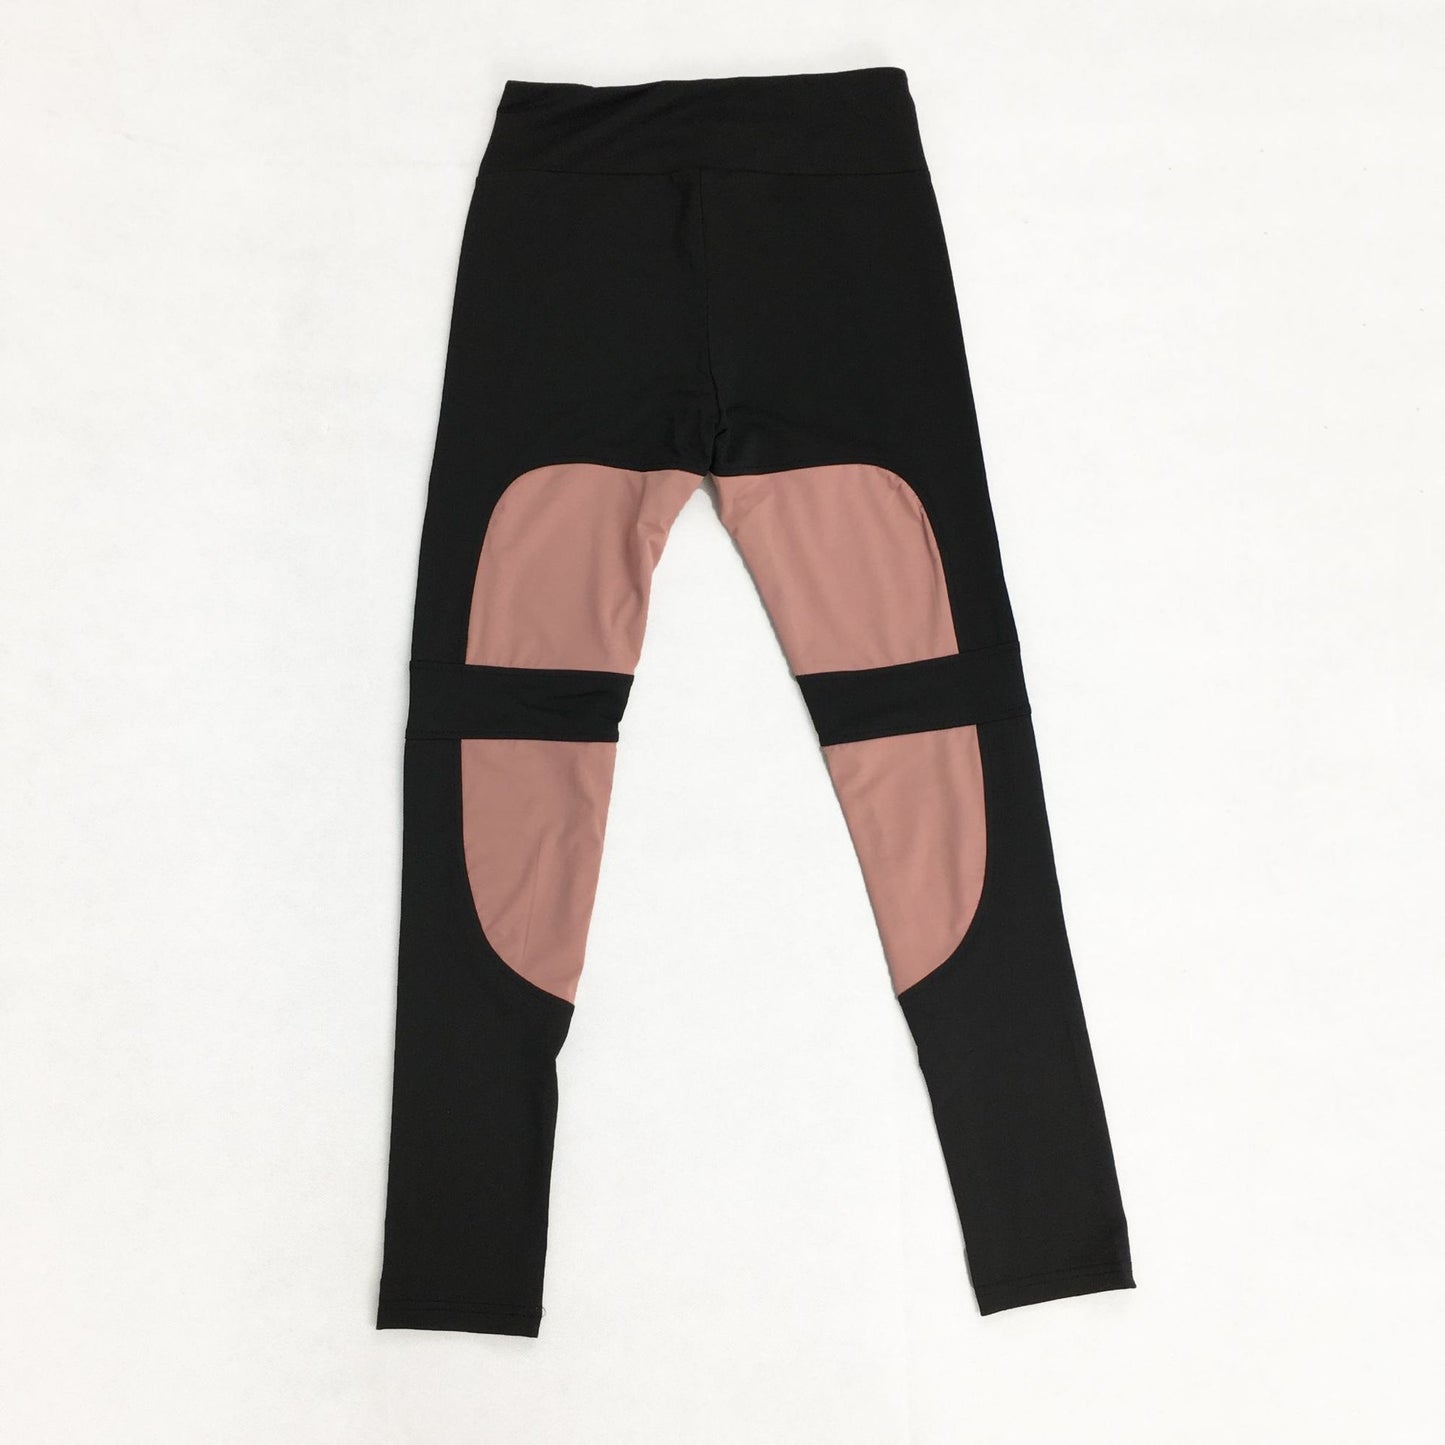 Women's yoga pants with mesh panel